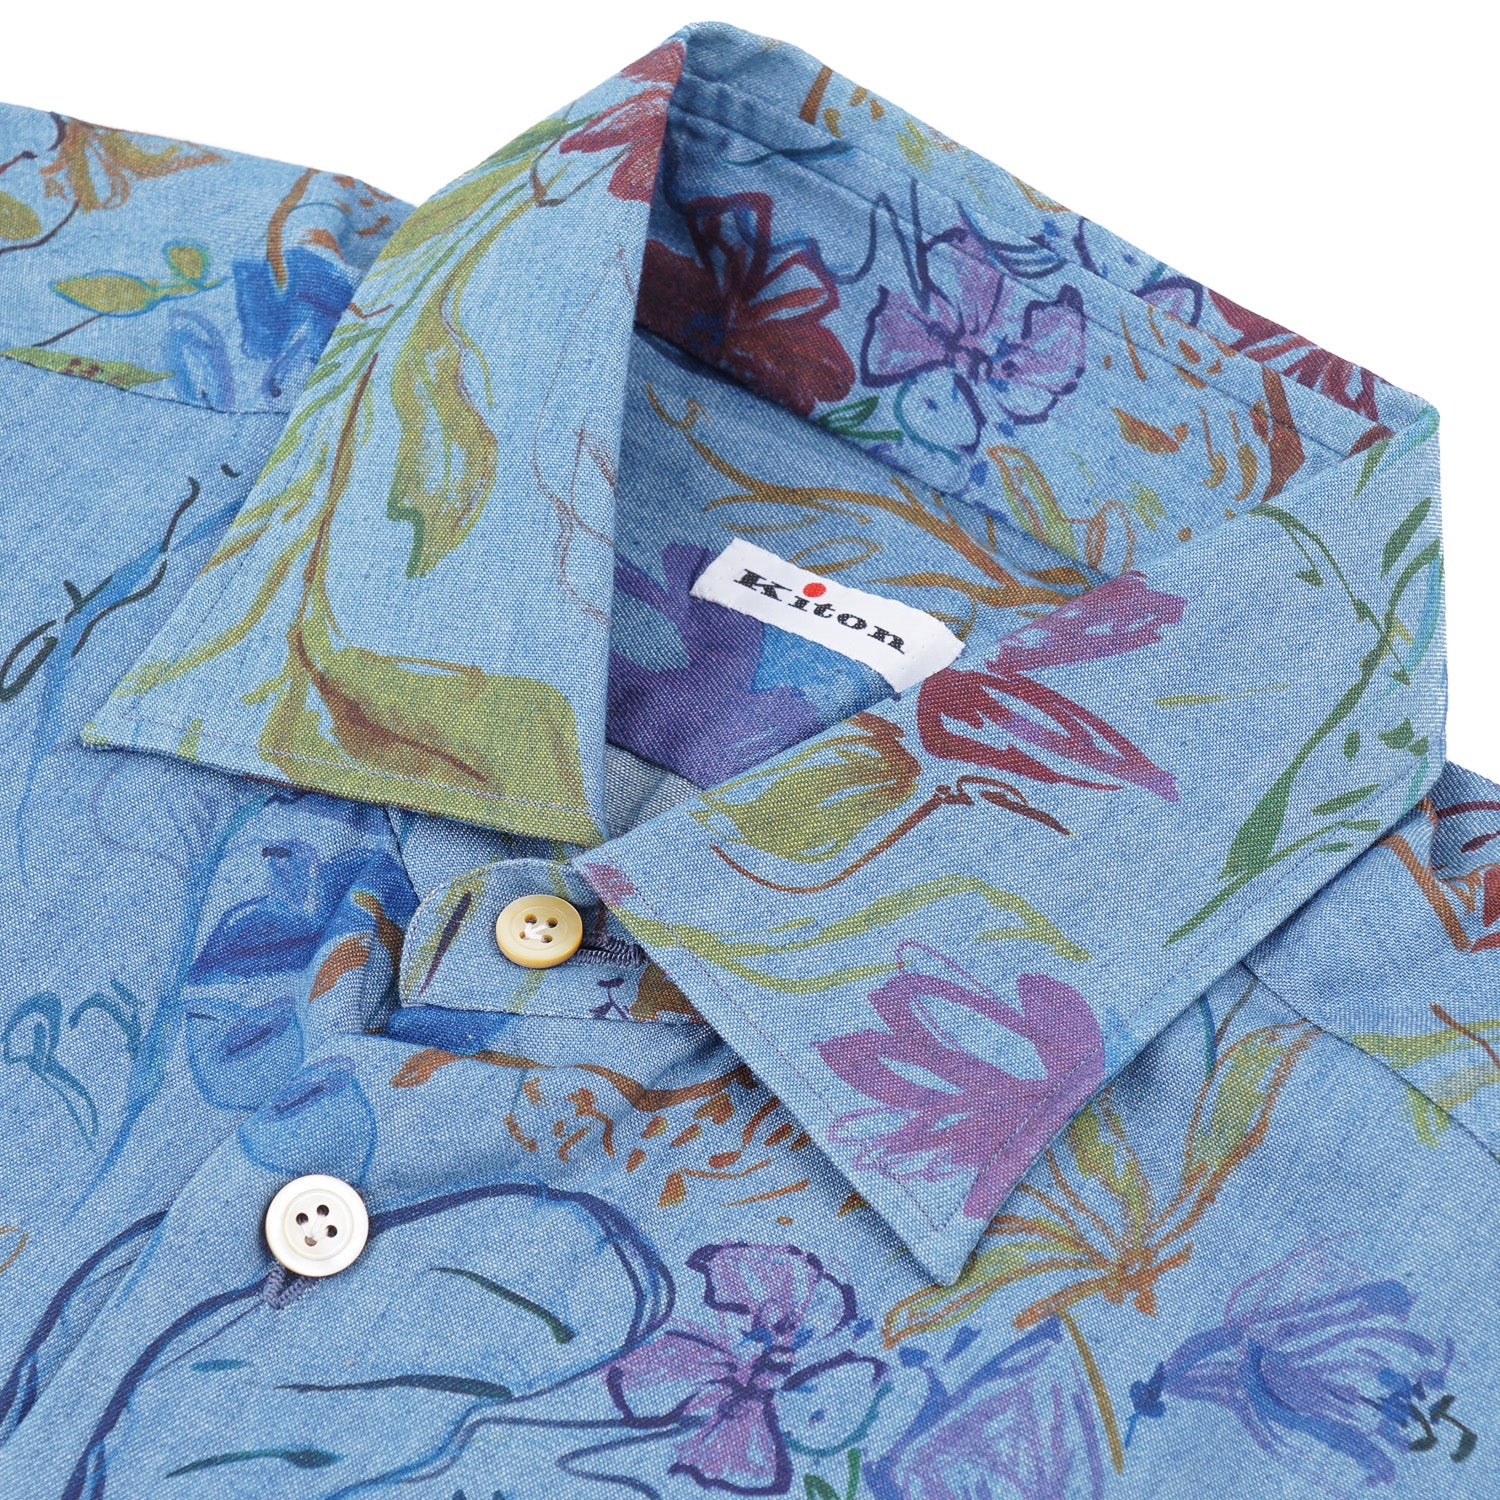 Kiton Floral Print Chambray Cotton Shirt - Top Shelf Apparel